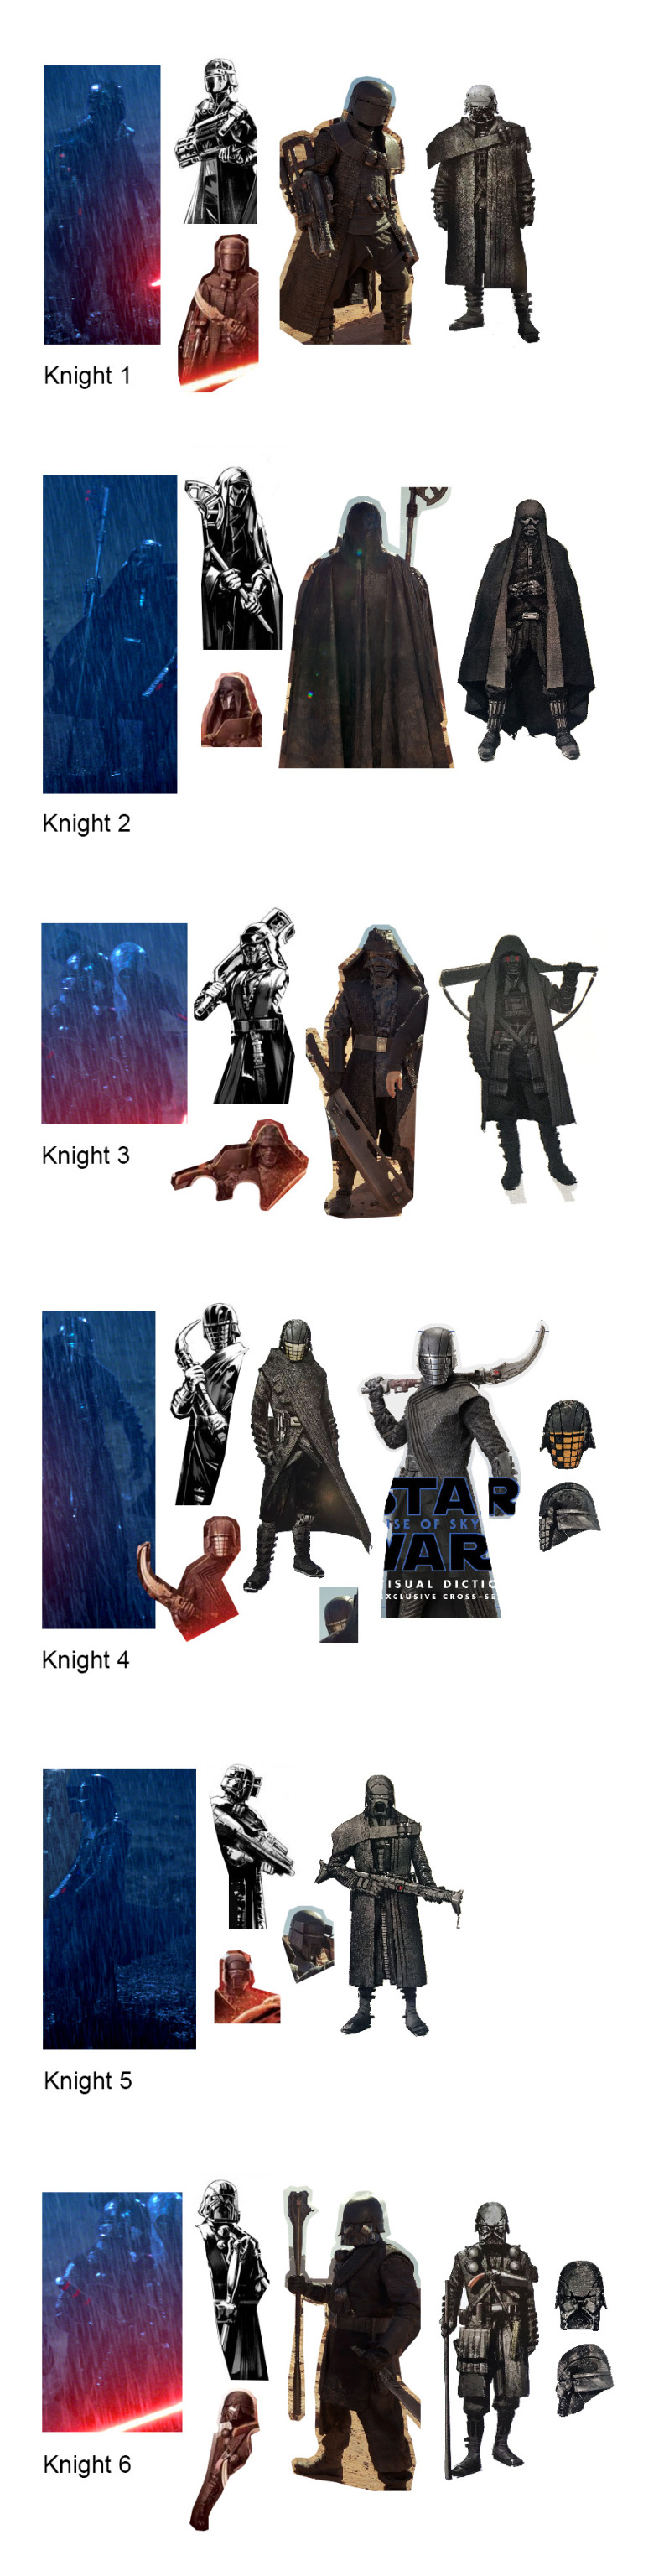 Knights Of Ren Wallpapers